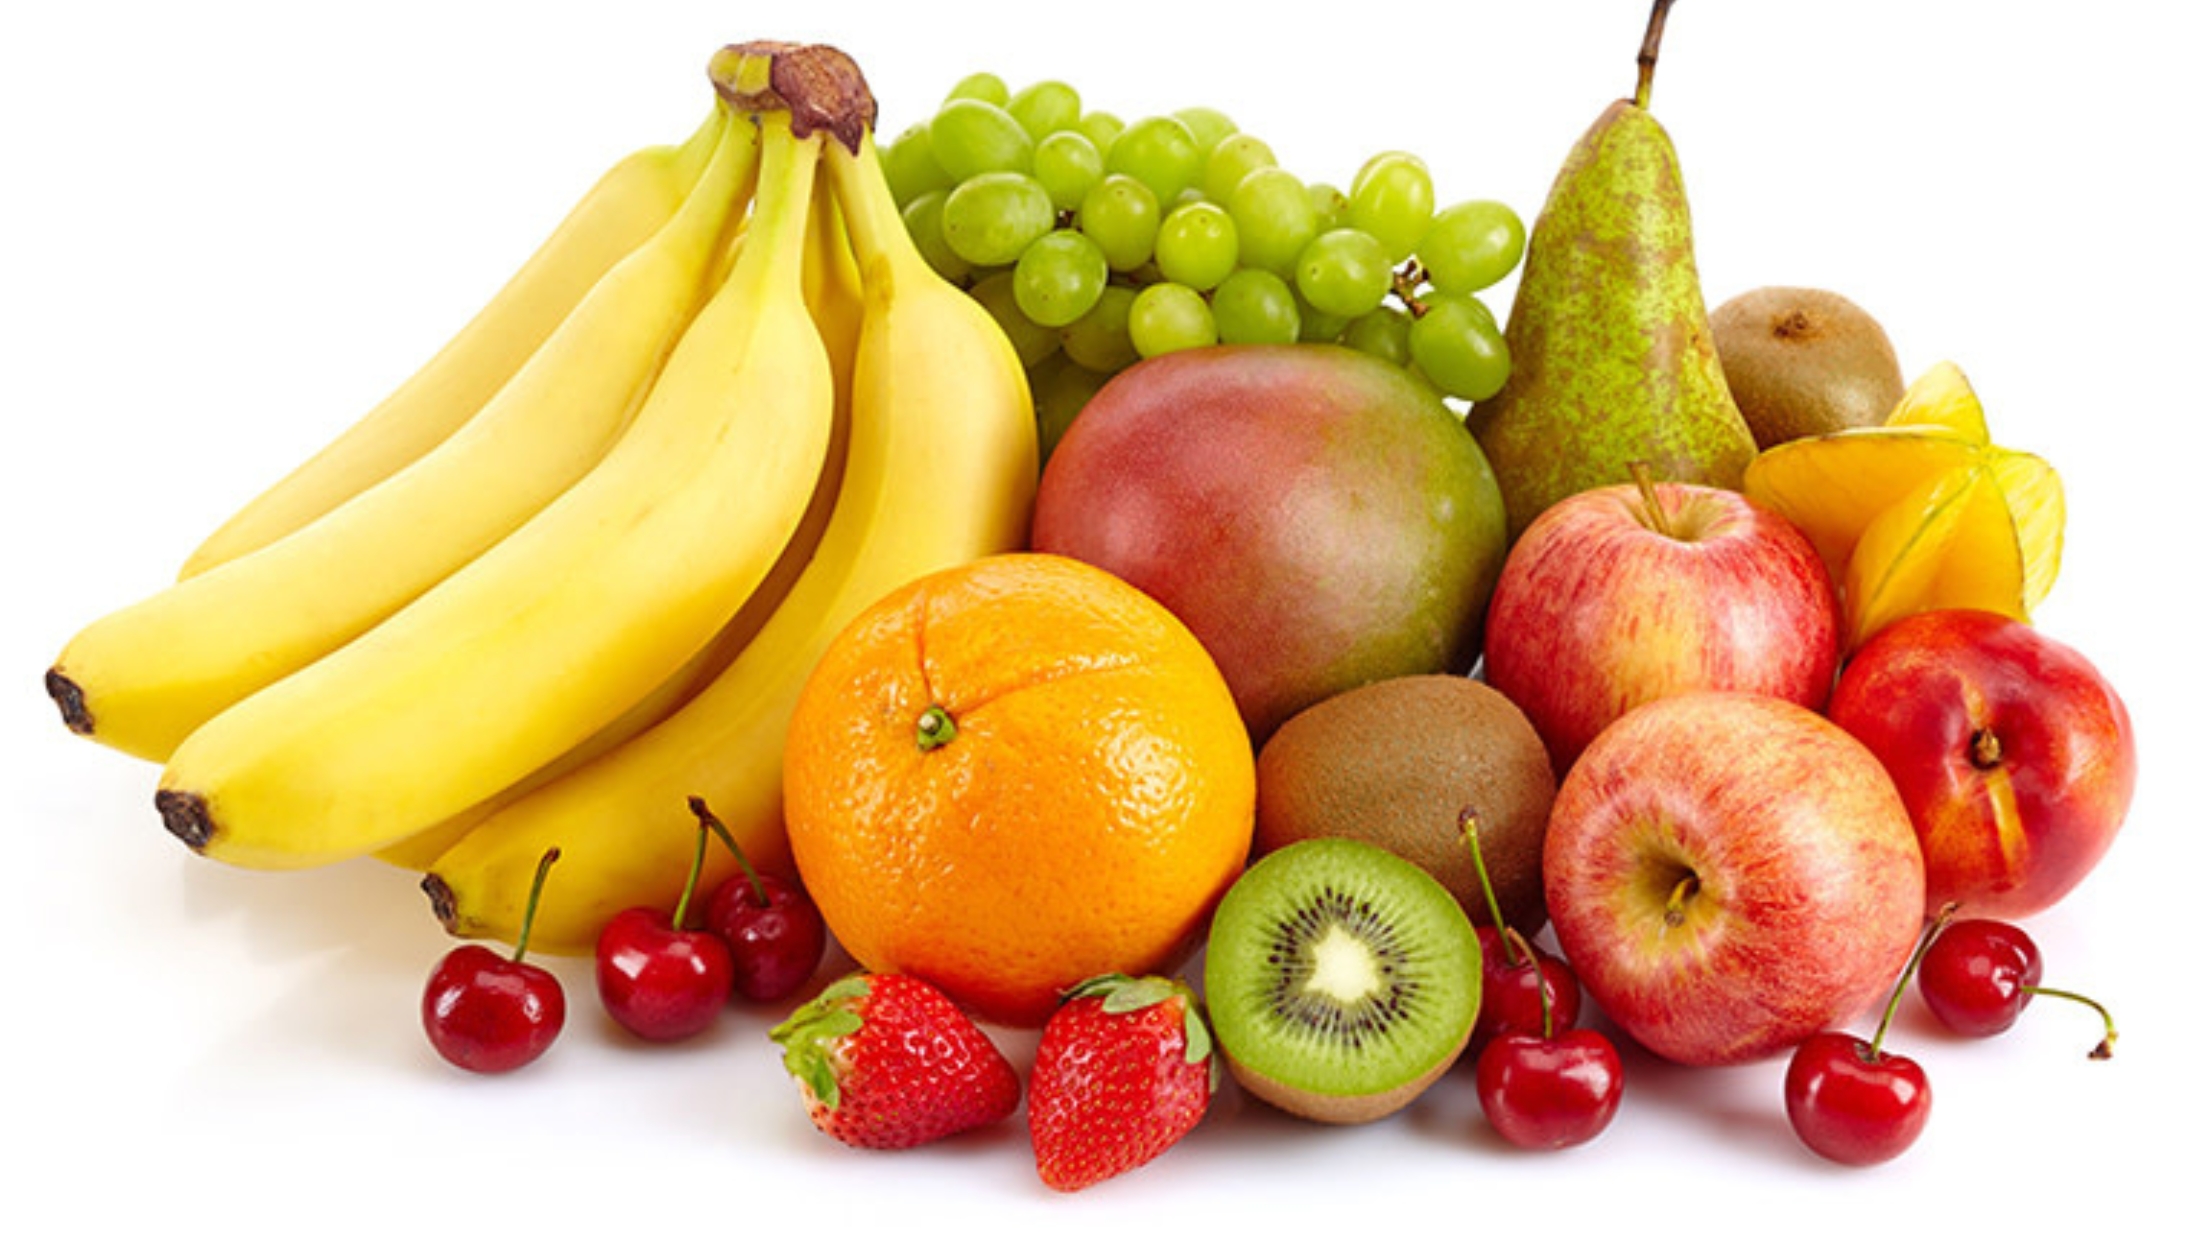 Dinh dưỡng cho người cao tuổi bằng cách ăn hoa quả chín